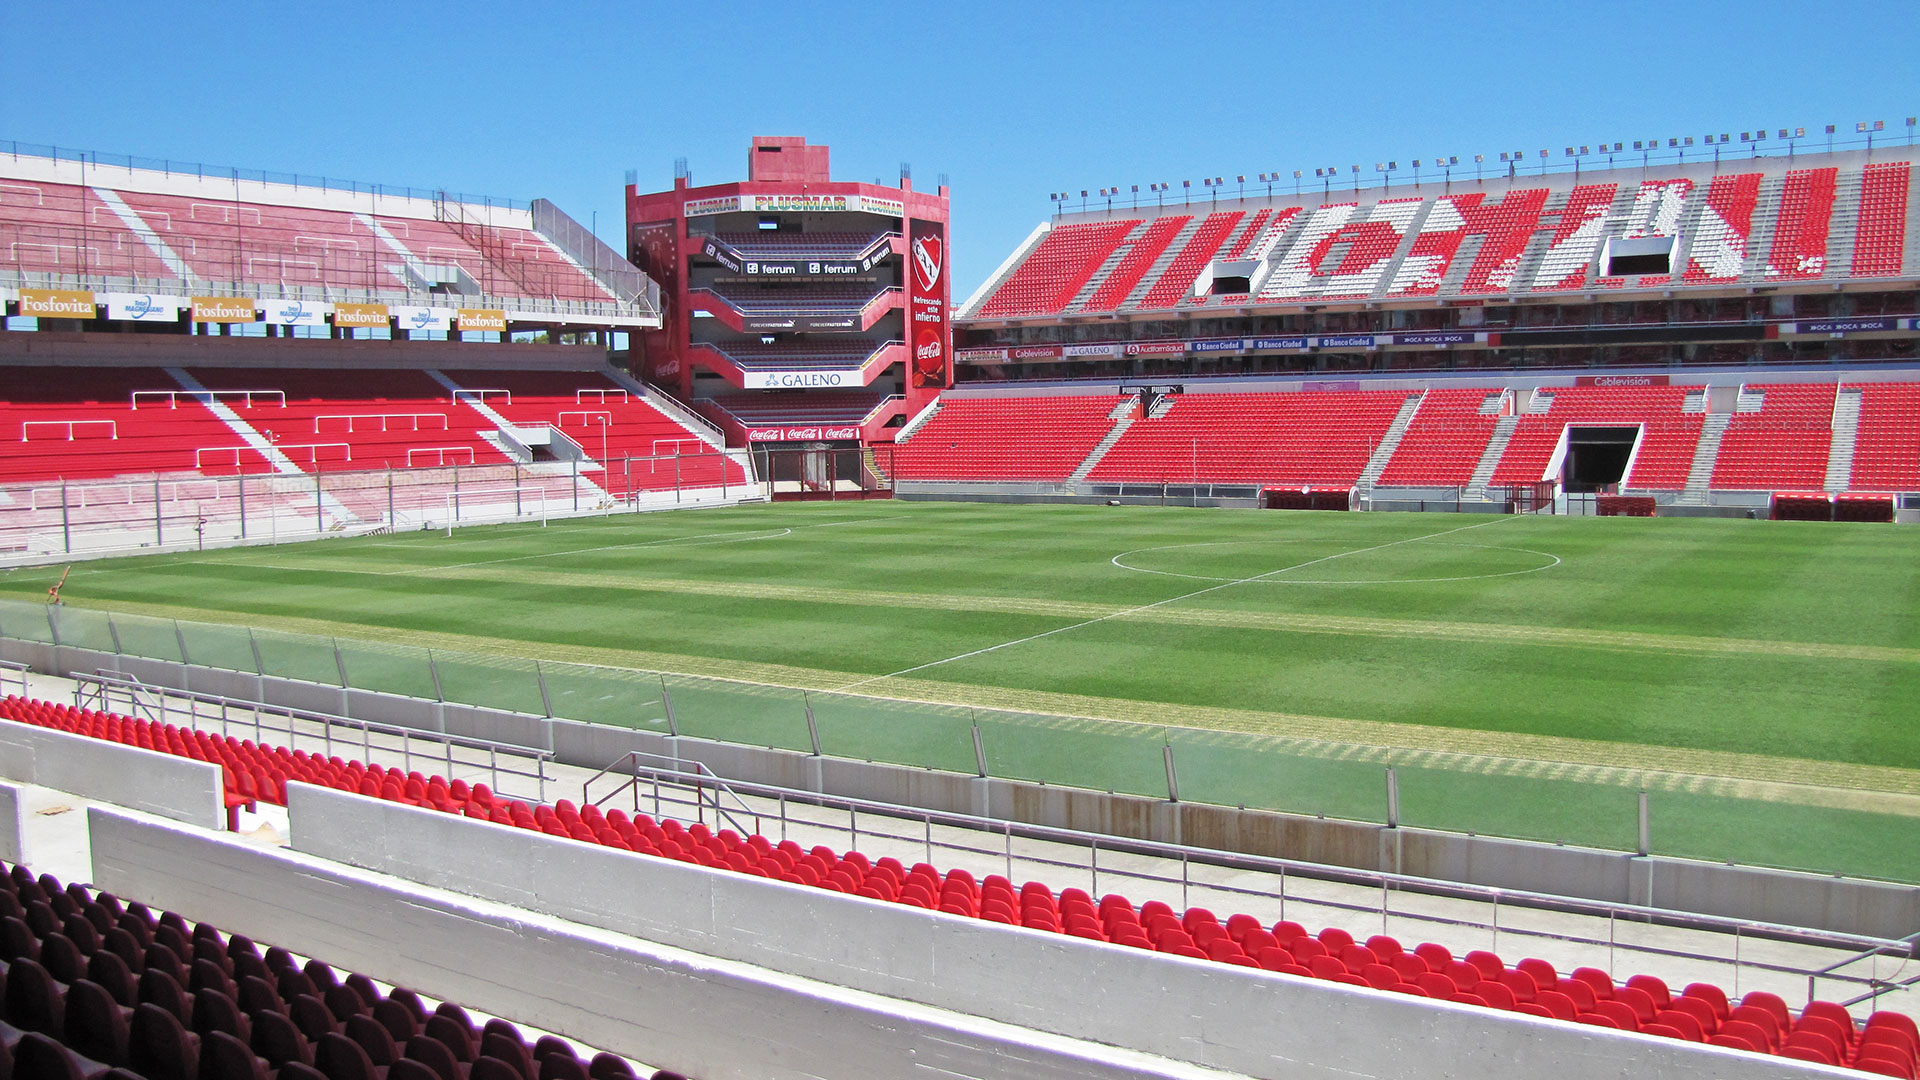 Club Atlético Independiente de Avellaneda - Rassegna® - Arquitectura y  Equipamientos